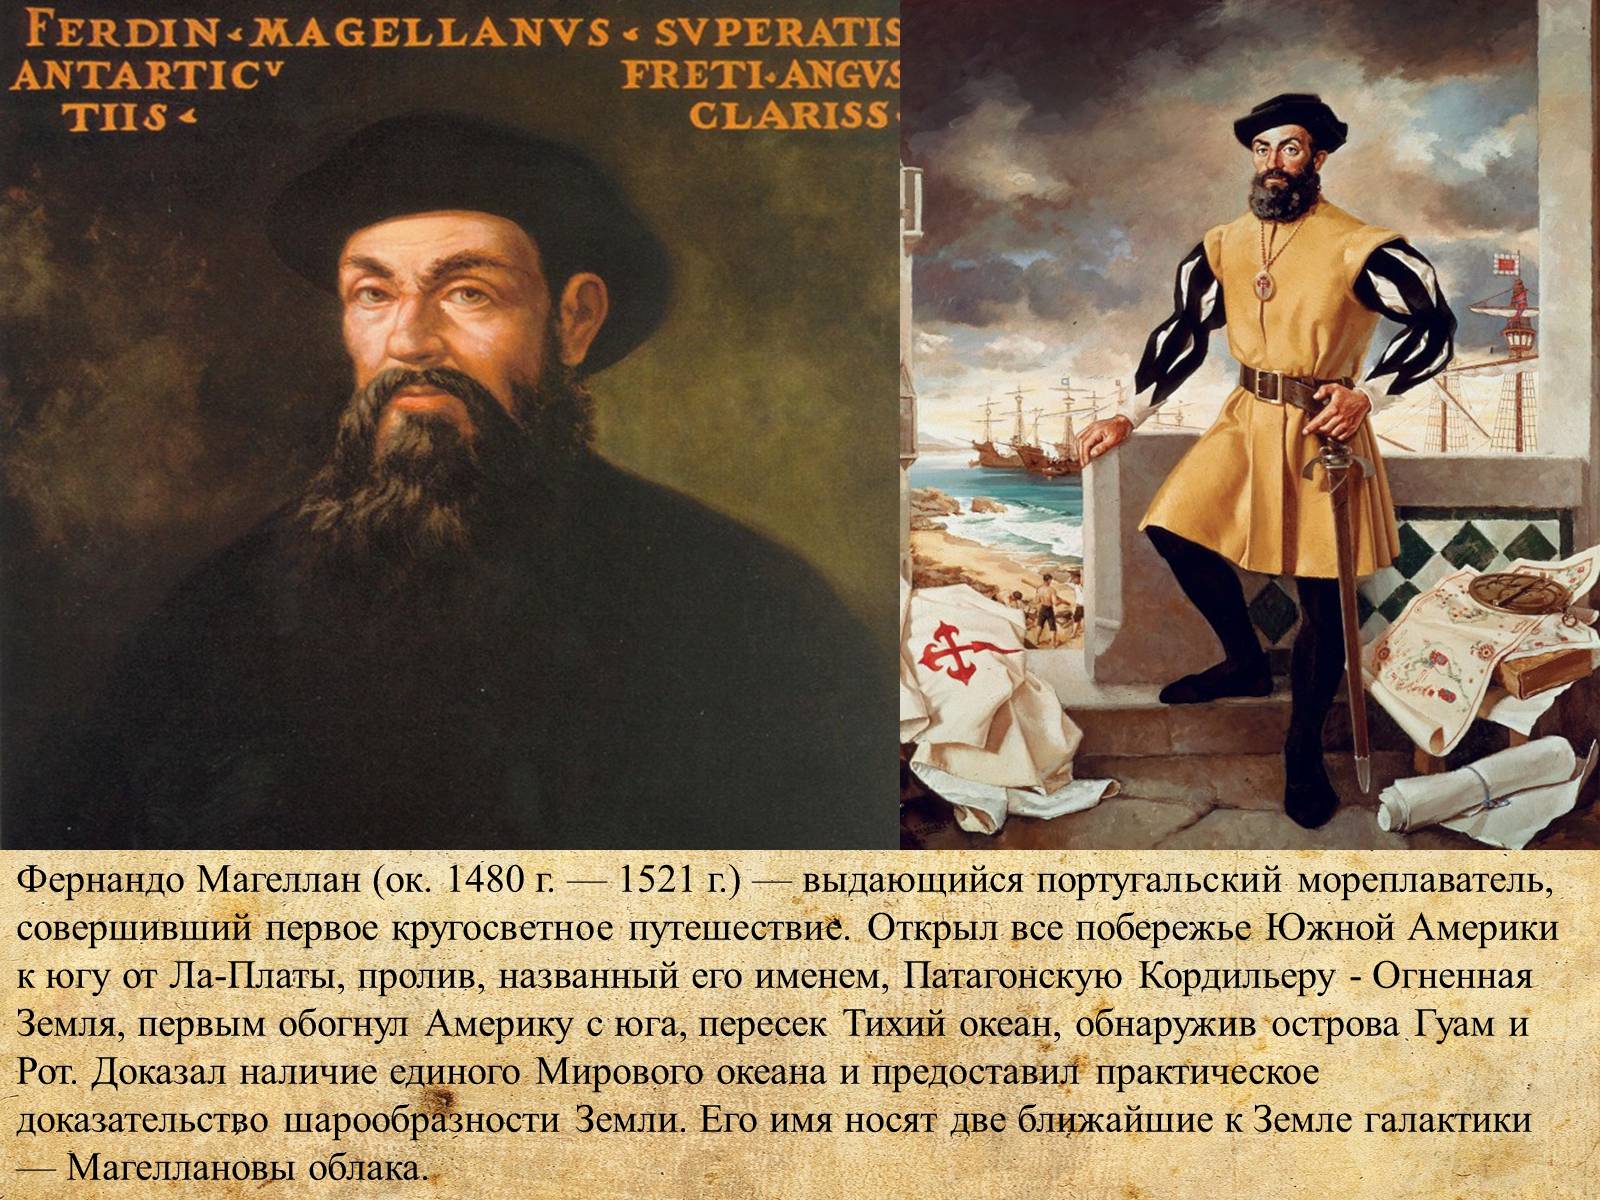 2 совершил первое кругосветное путешествие. Фернан Магеллан мореплаватели Португалии. Фернан Магеллан (1480-1521). Проект на тему Фернан Магеллан. 2. Фернан Магеллан.